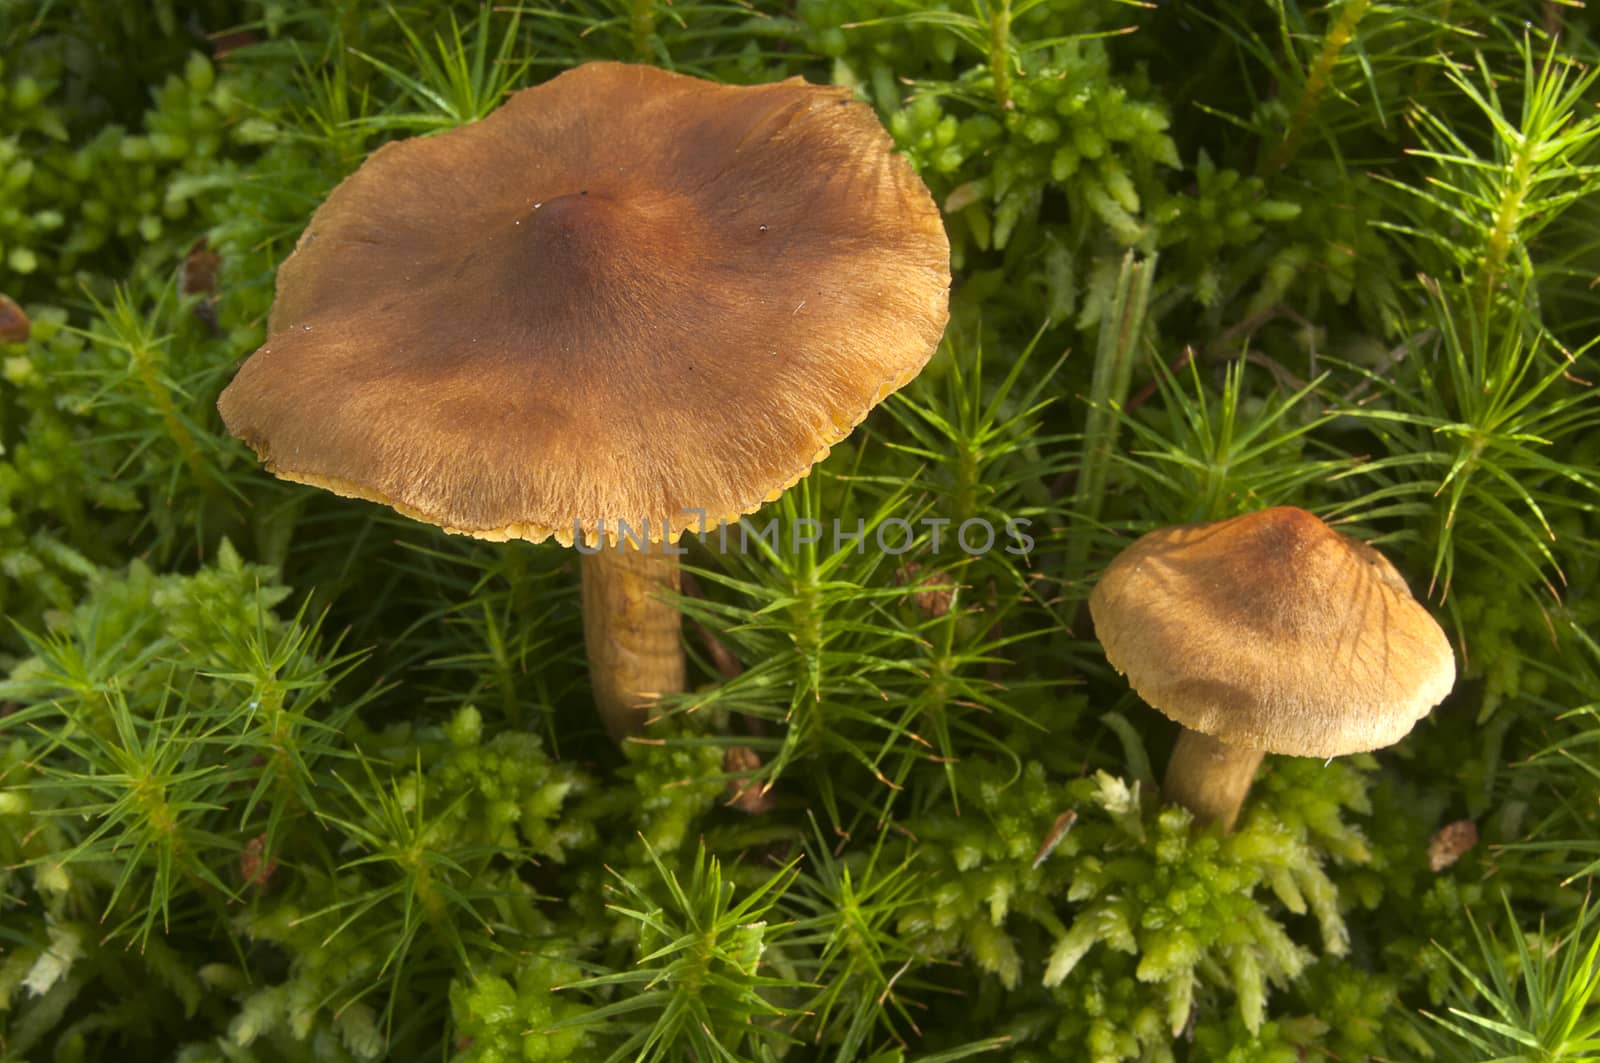 Small mushroom among the moss by jalonsohu@gmail.com